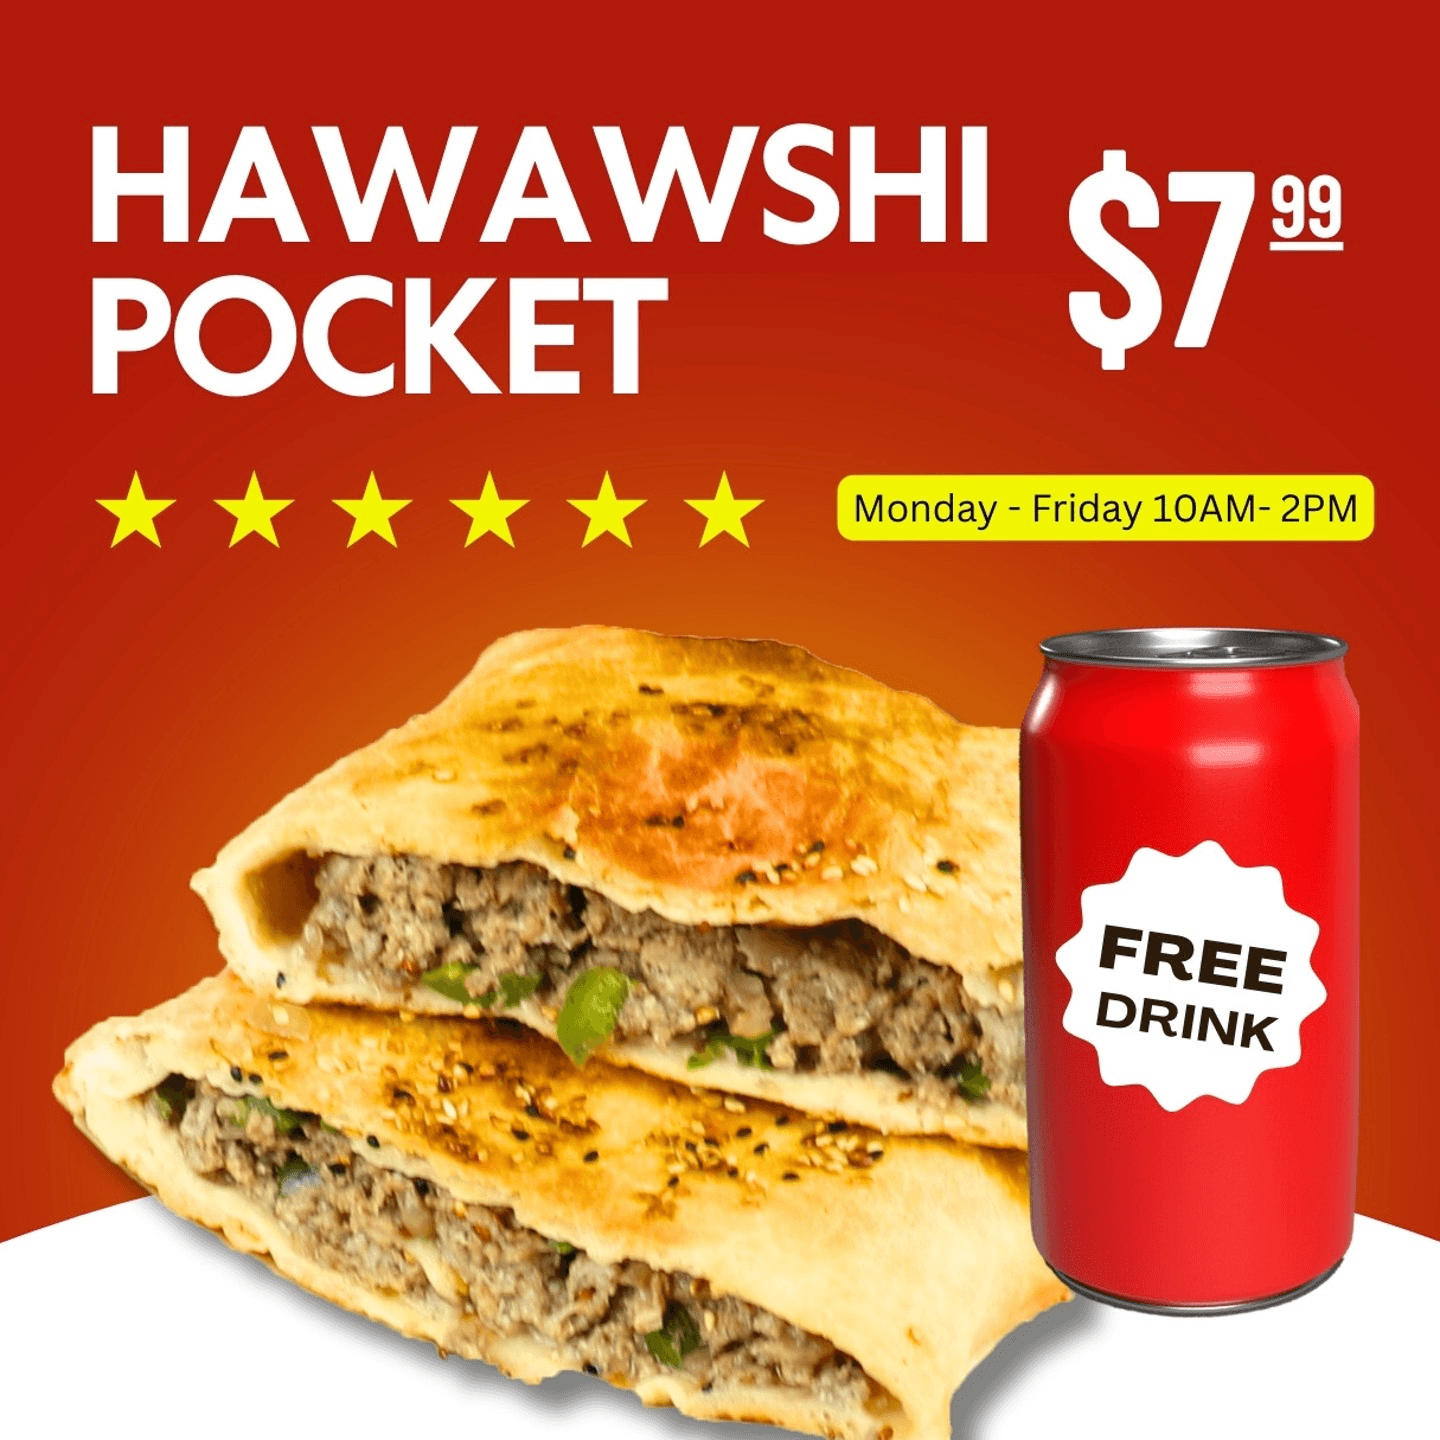 Hawawshi Pocket Lunch Special